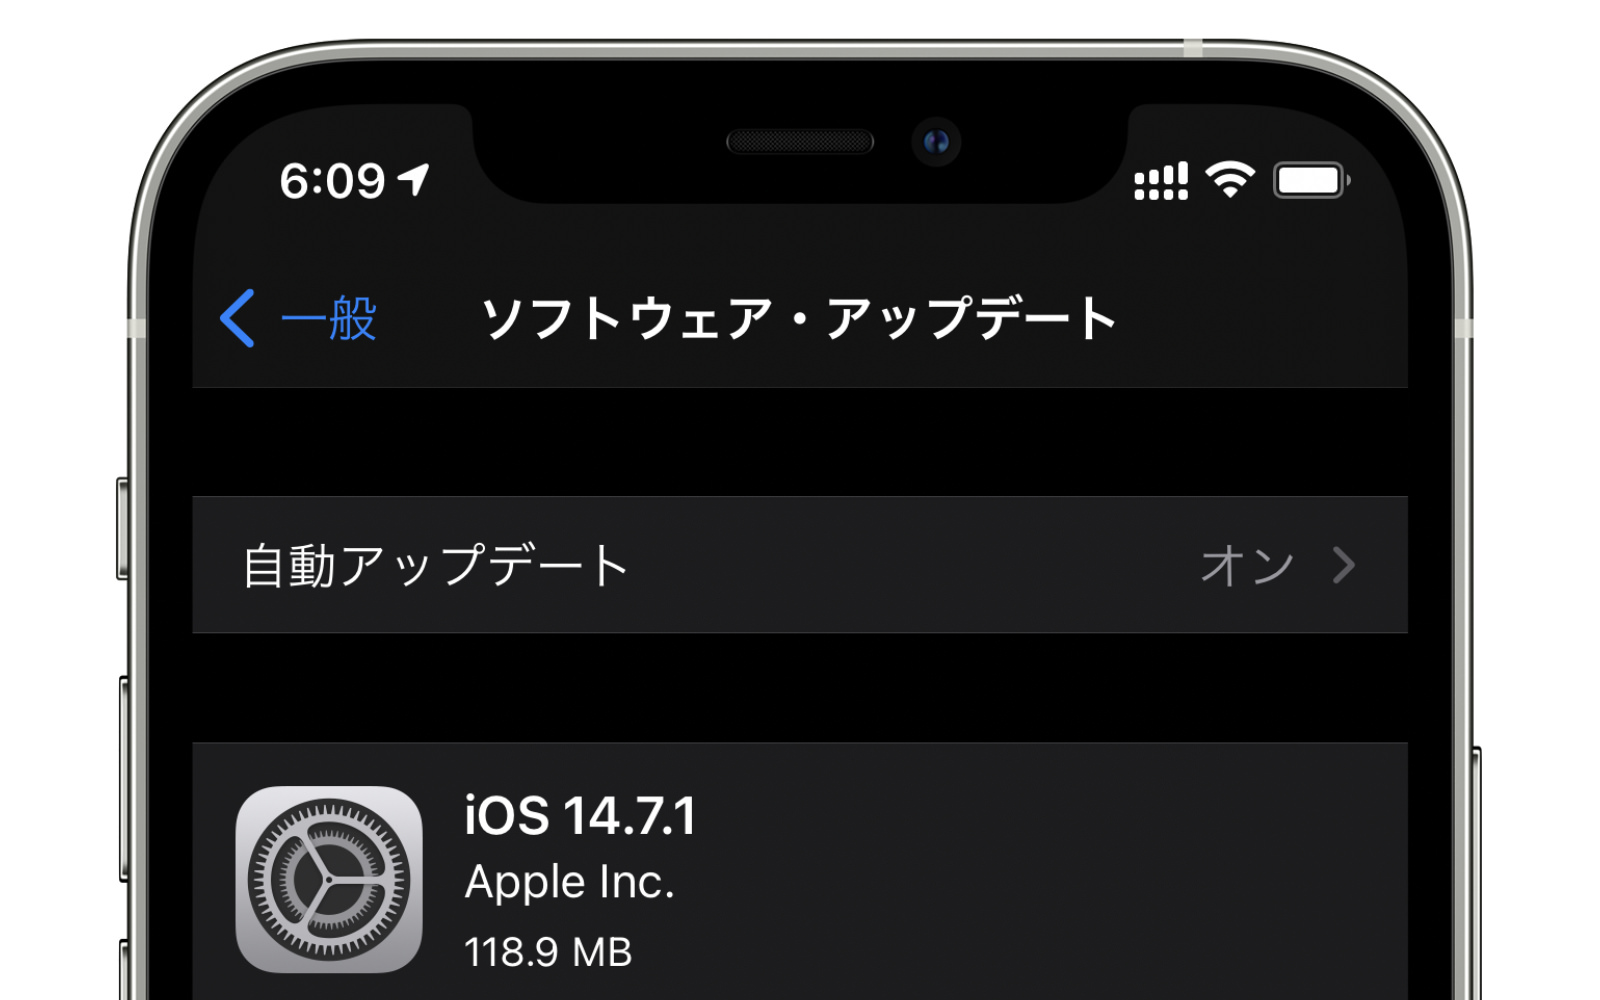 IOS14 7 1 update